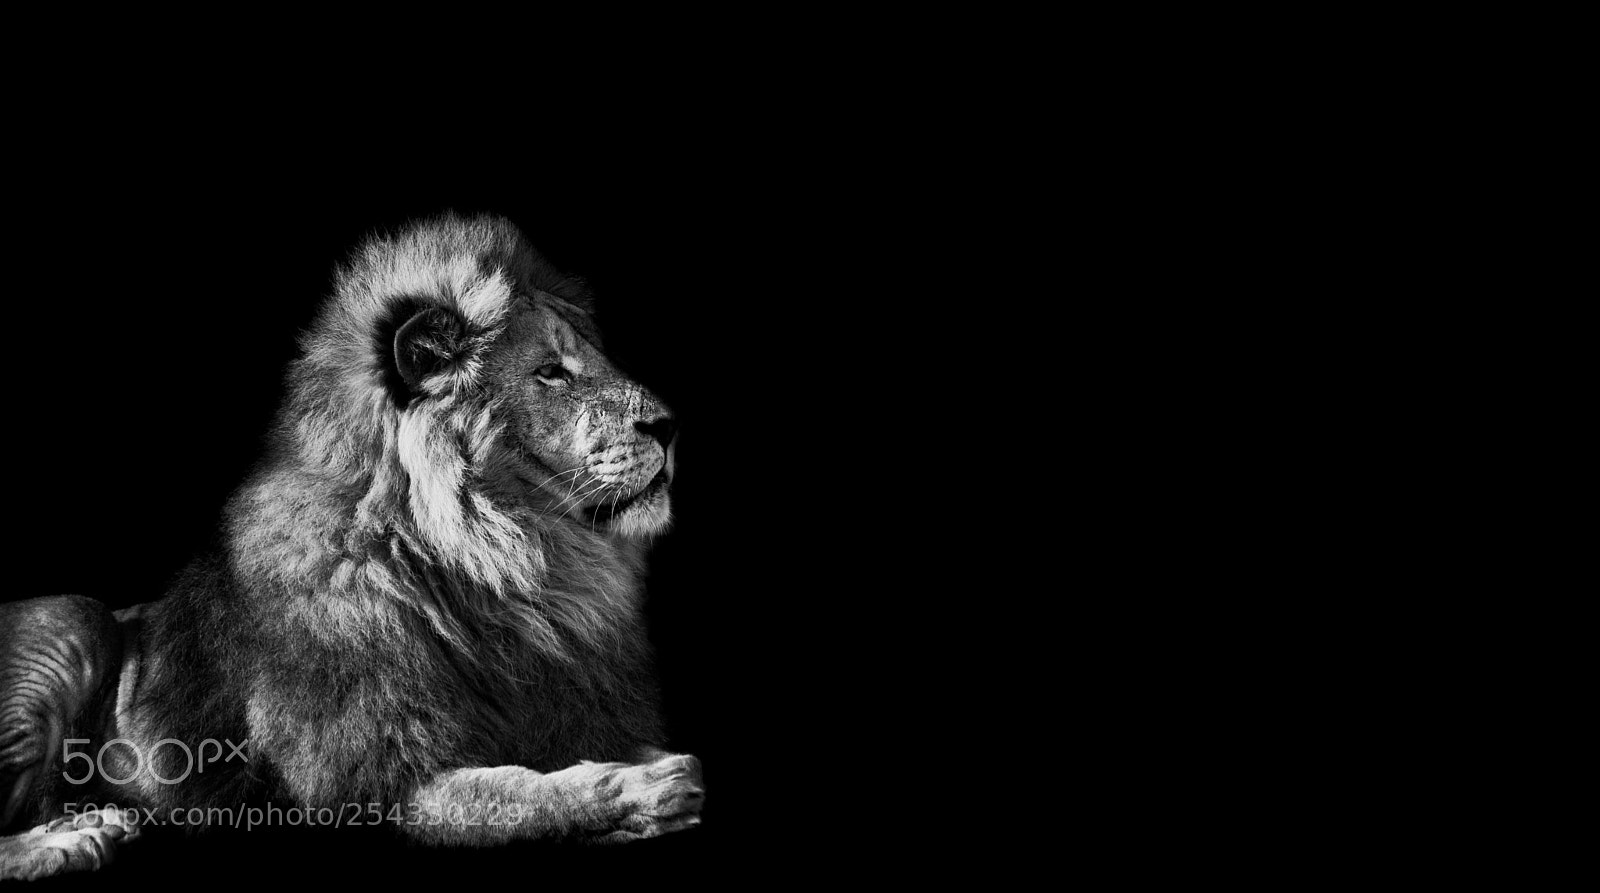 Canon EOS 80D sample photo. Lion king portrait photography